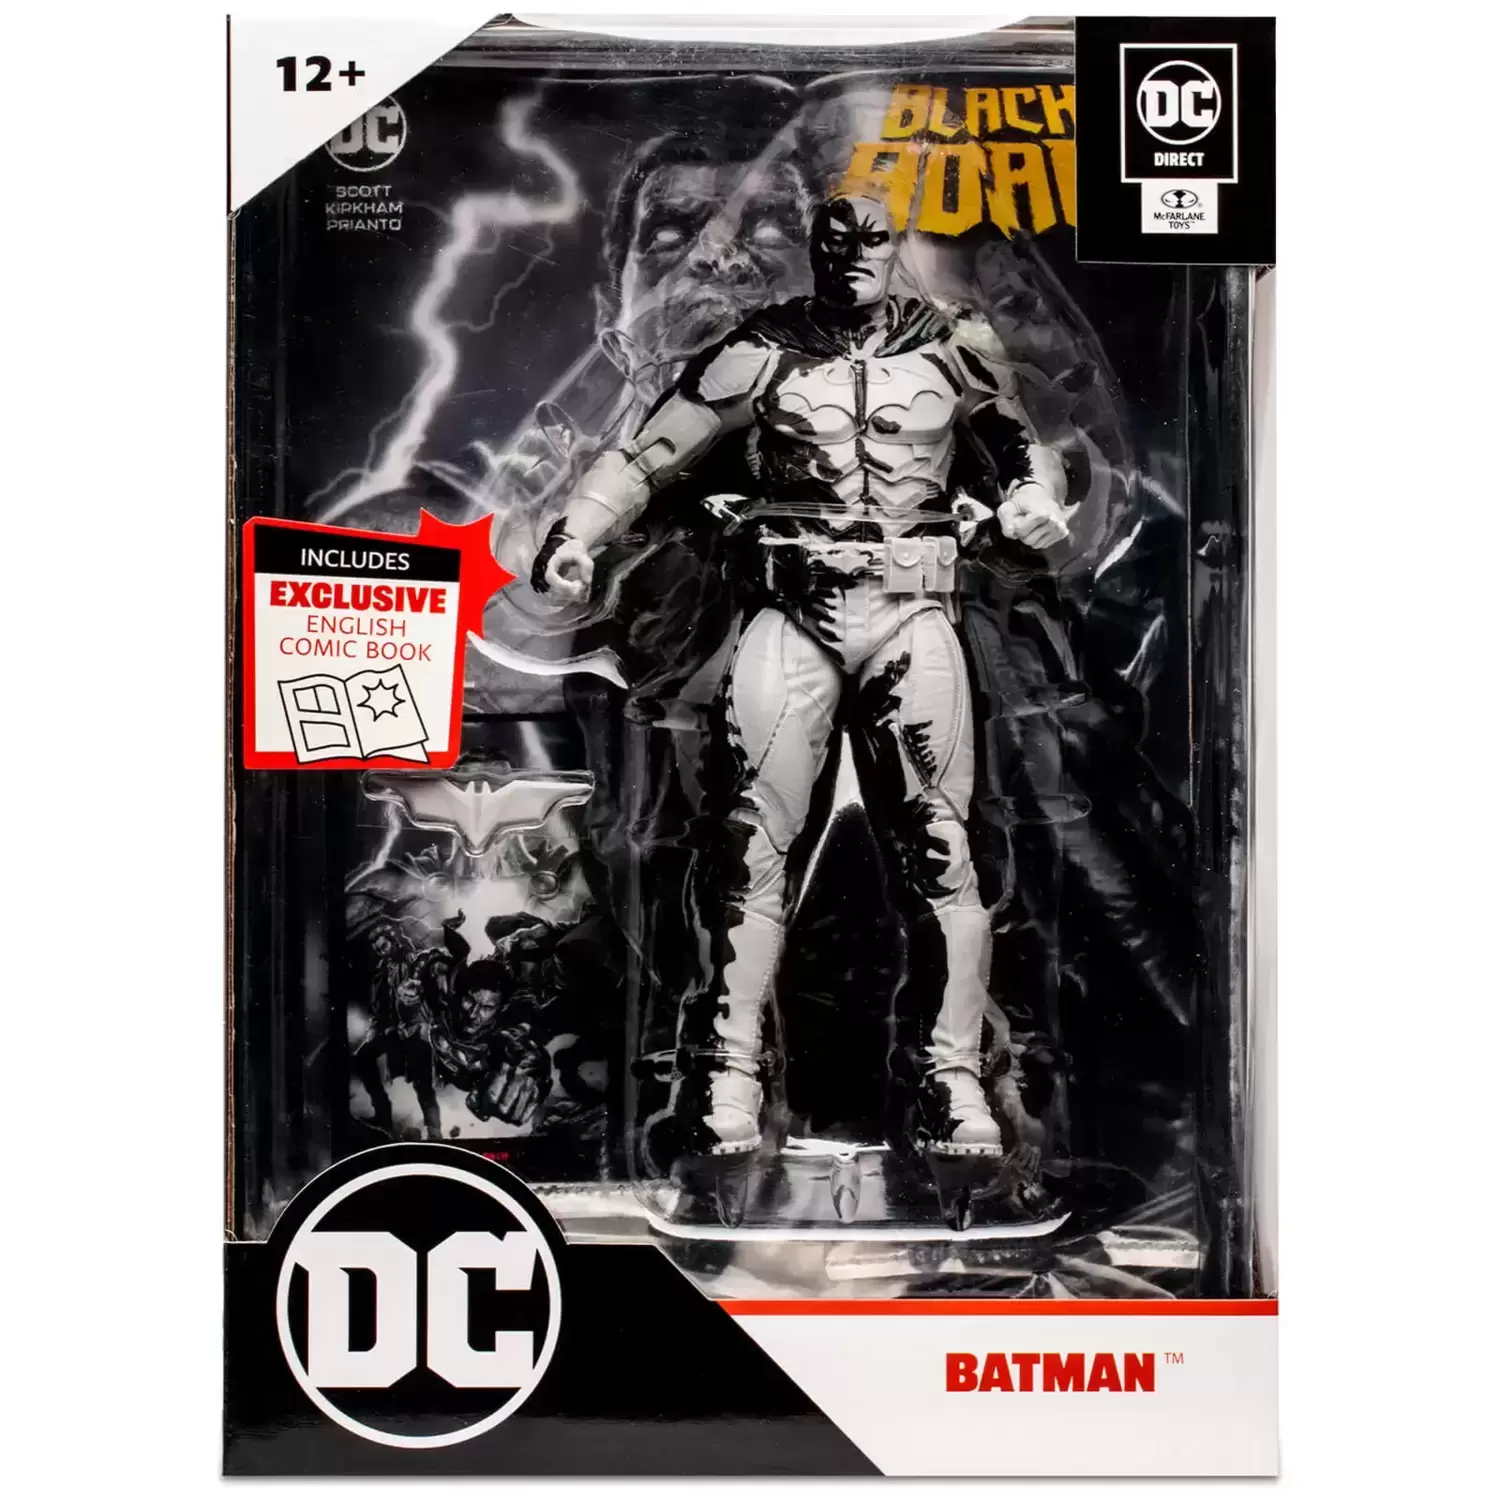 McFarlane - DC Page Punchers - Batman Black & White (DC Direct) - SDCC